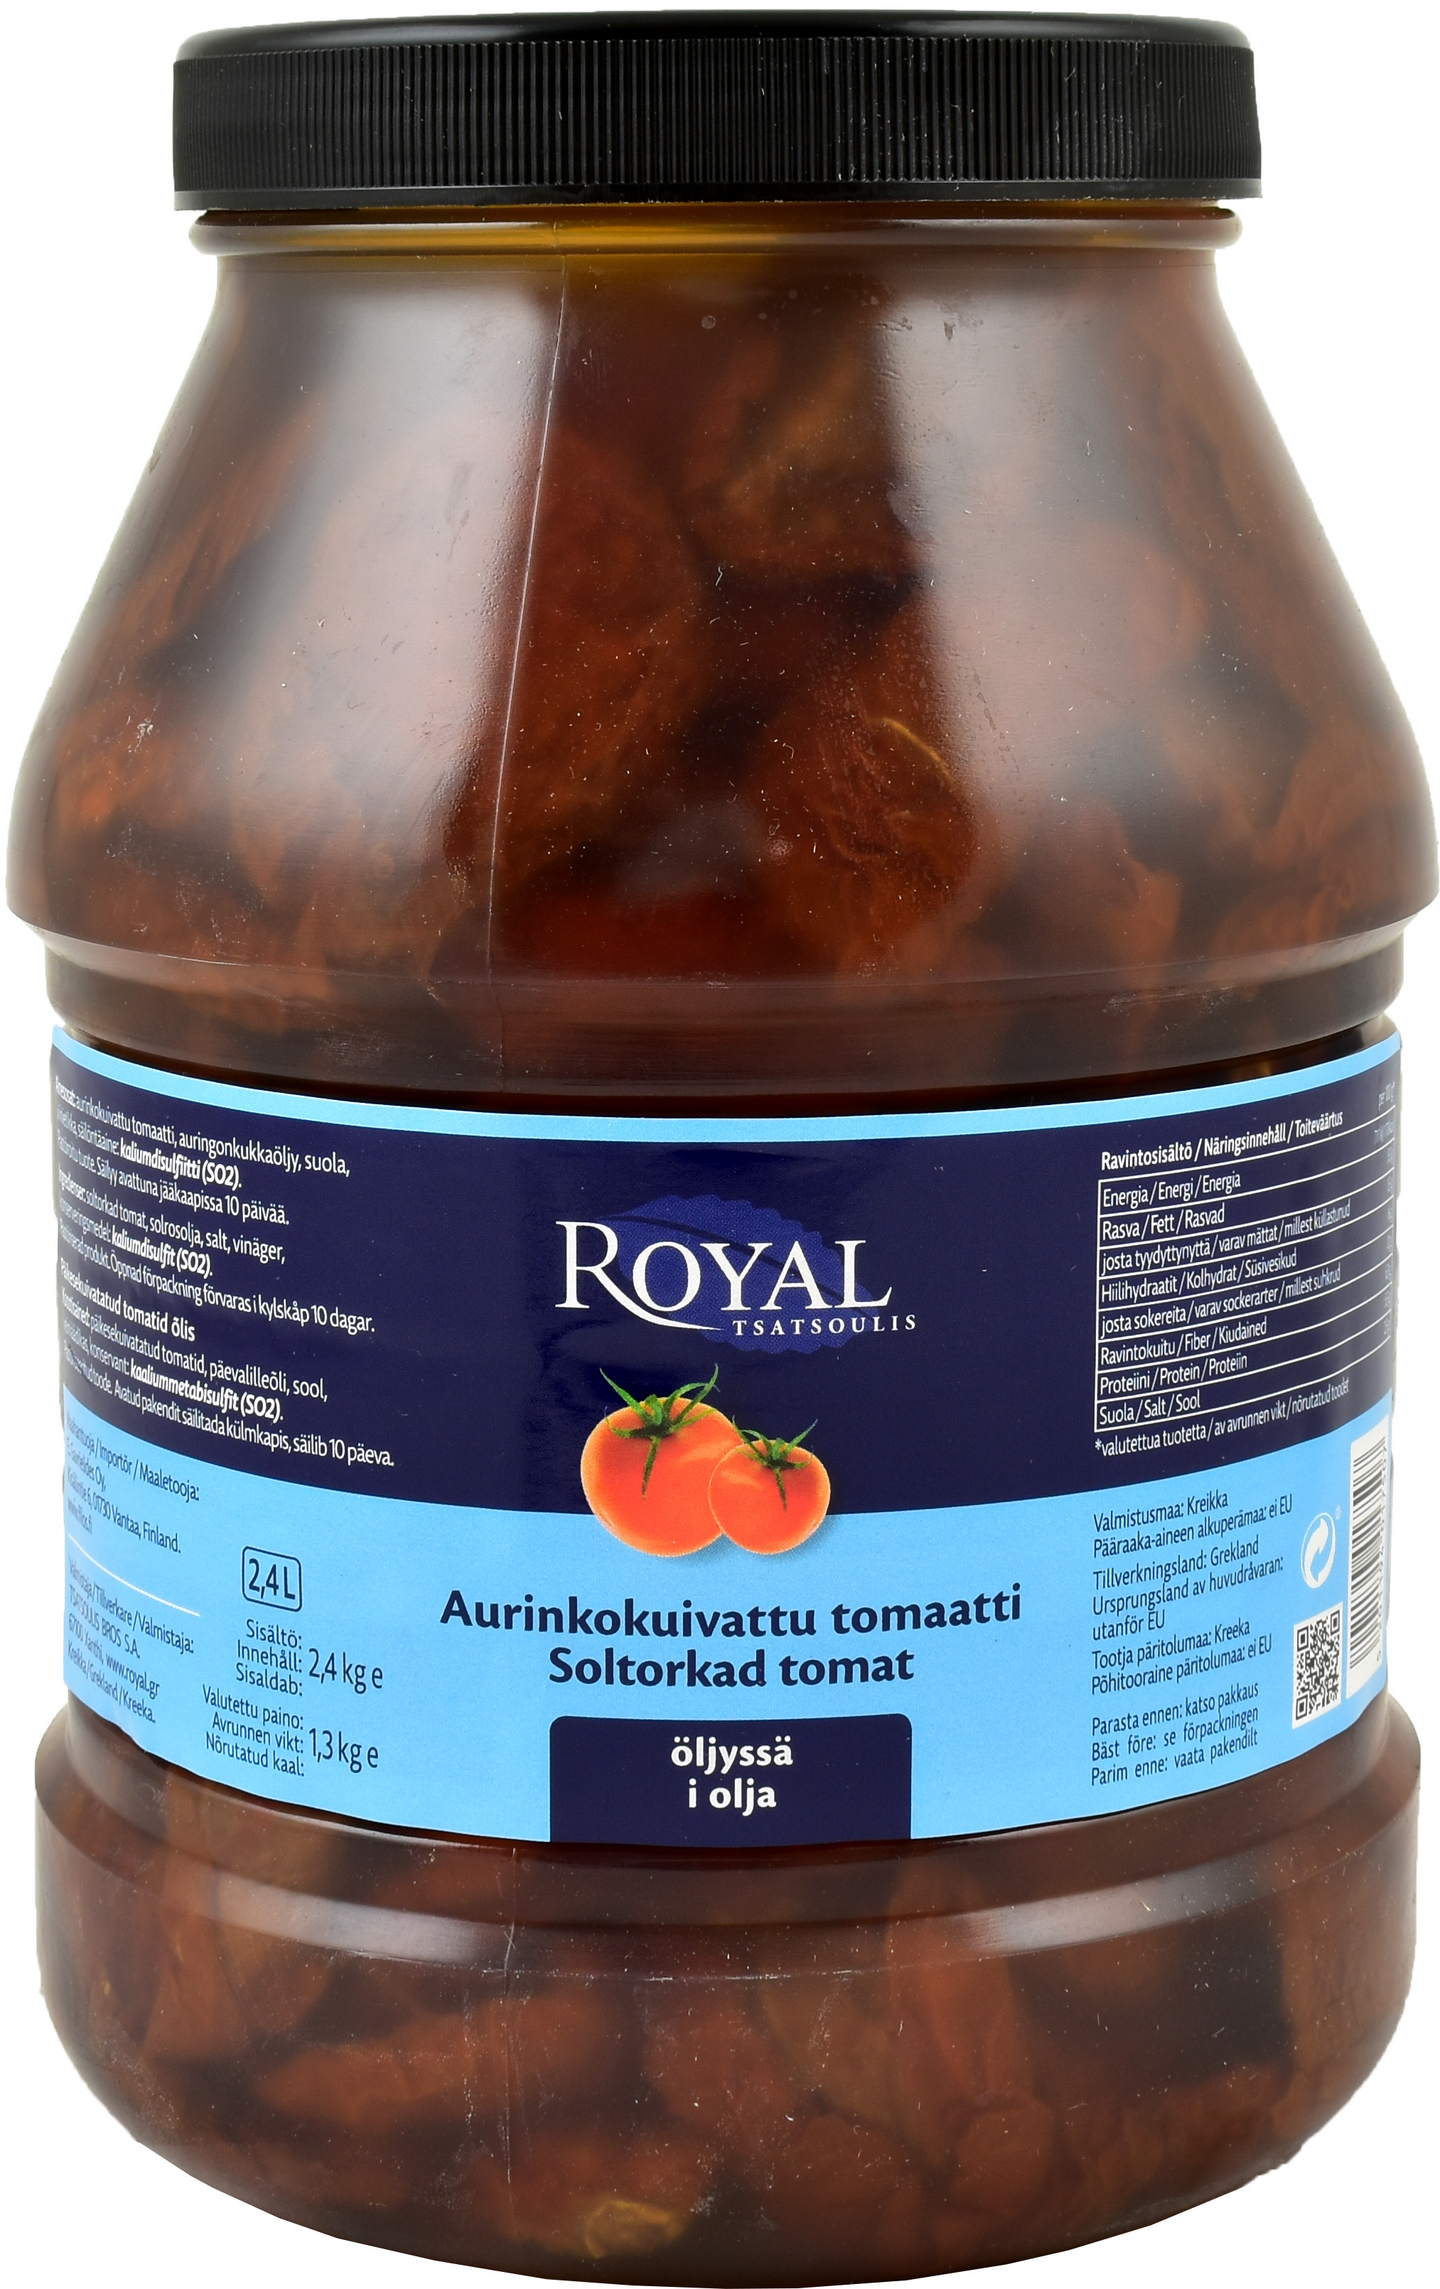 Royal aurinkokuivattu tomaatti öljyssä 2,4/1,3kg